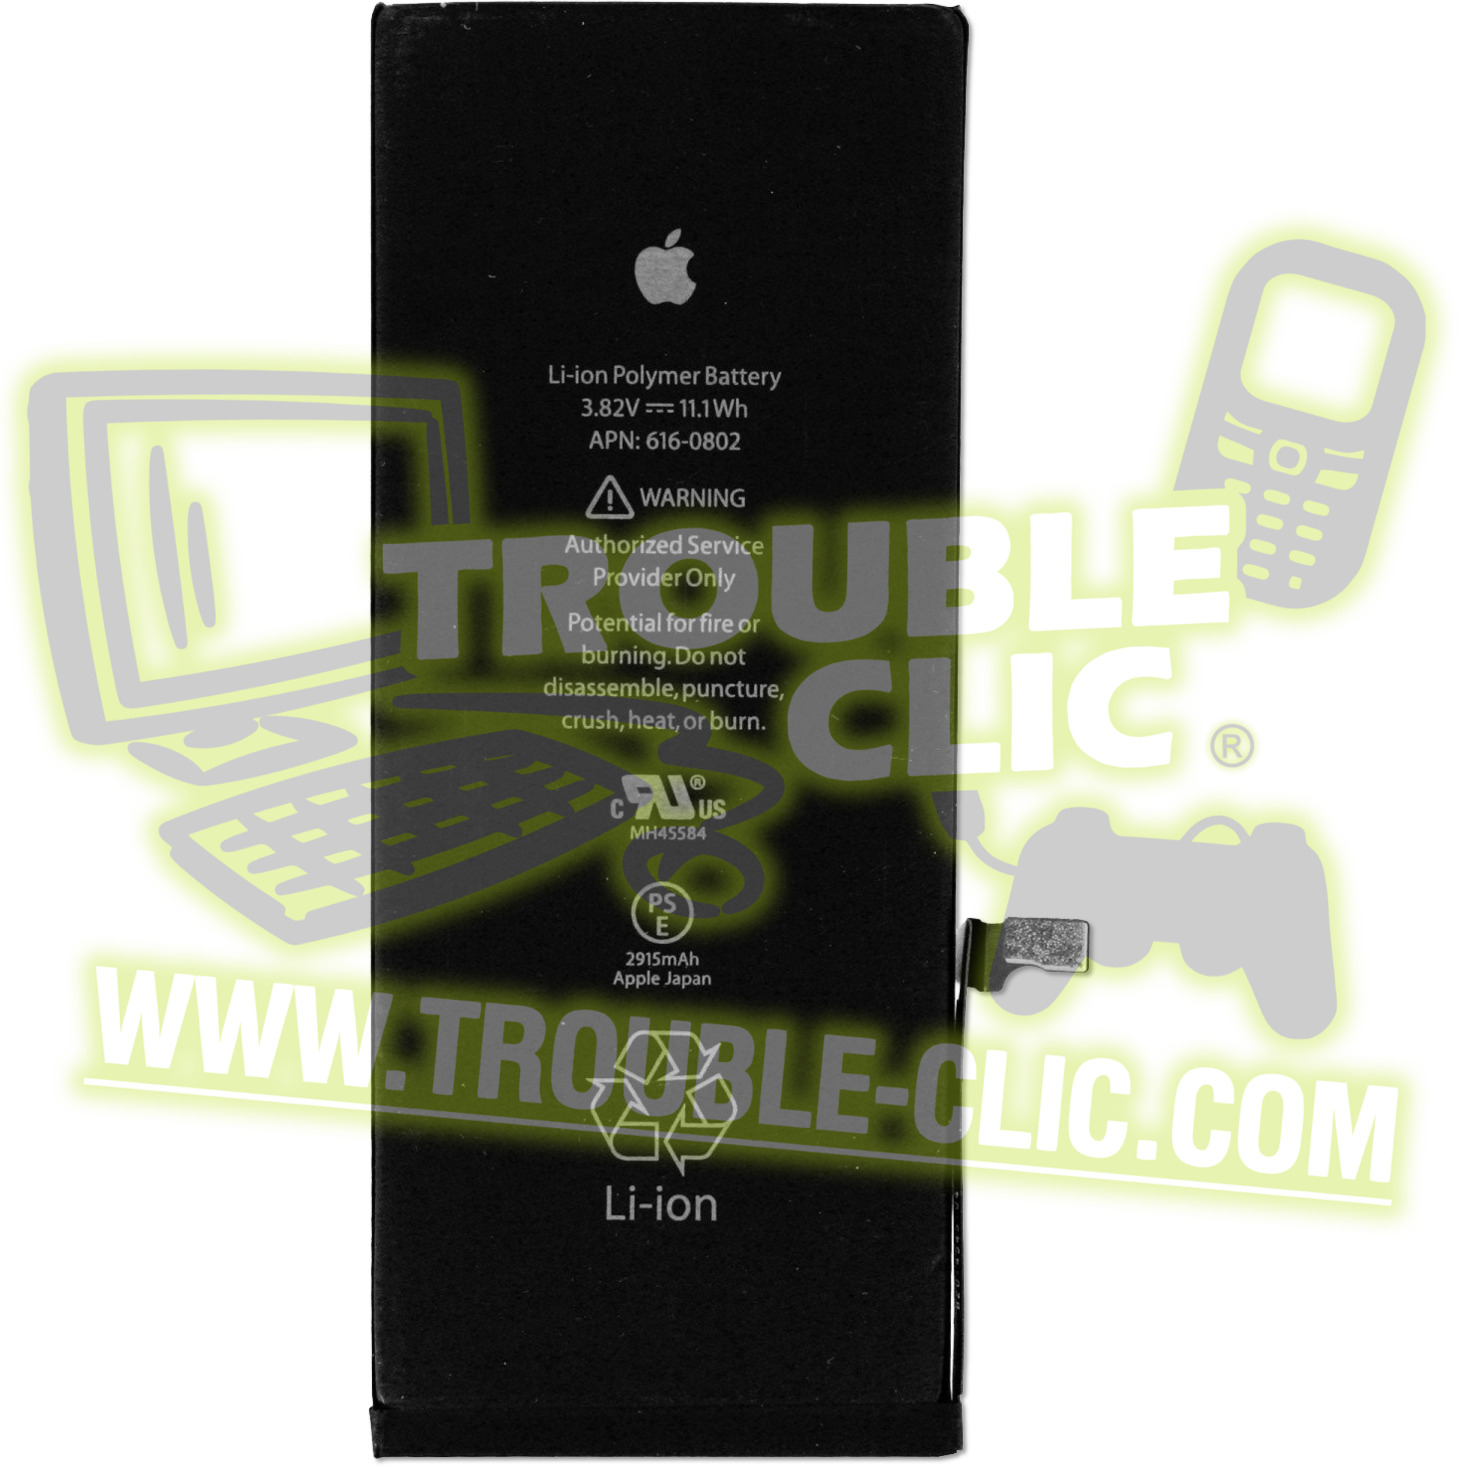 https://www.trouble-clic.com/product/1534-1-2000-batterie-de-rechange-pour-iphone-6s-plus.jpg